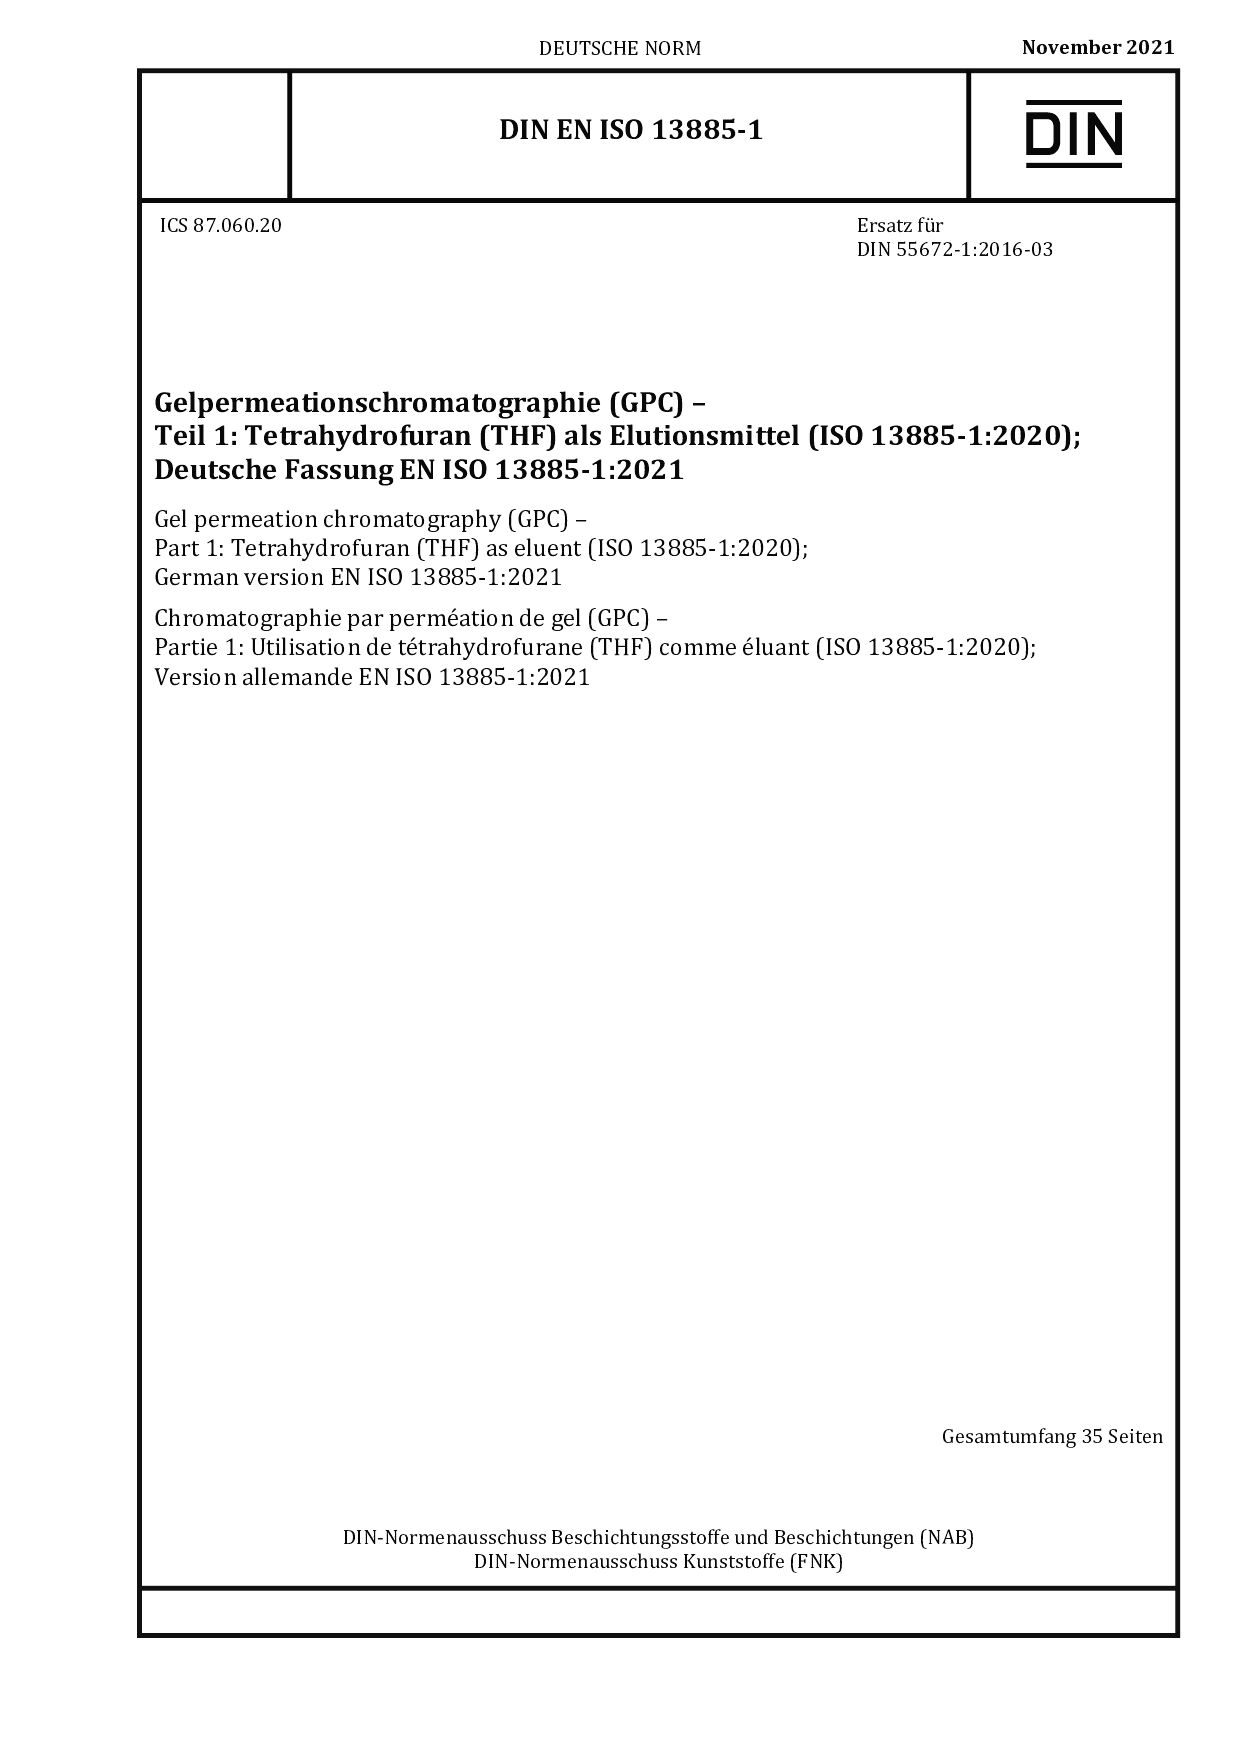 DIN EN ISO 13885-1:2021封面图